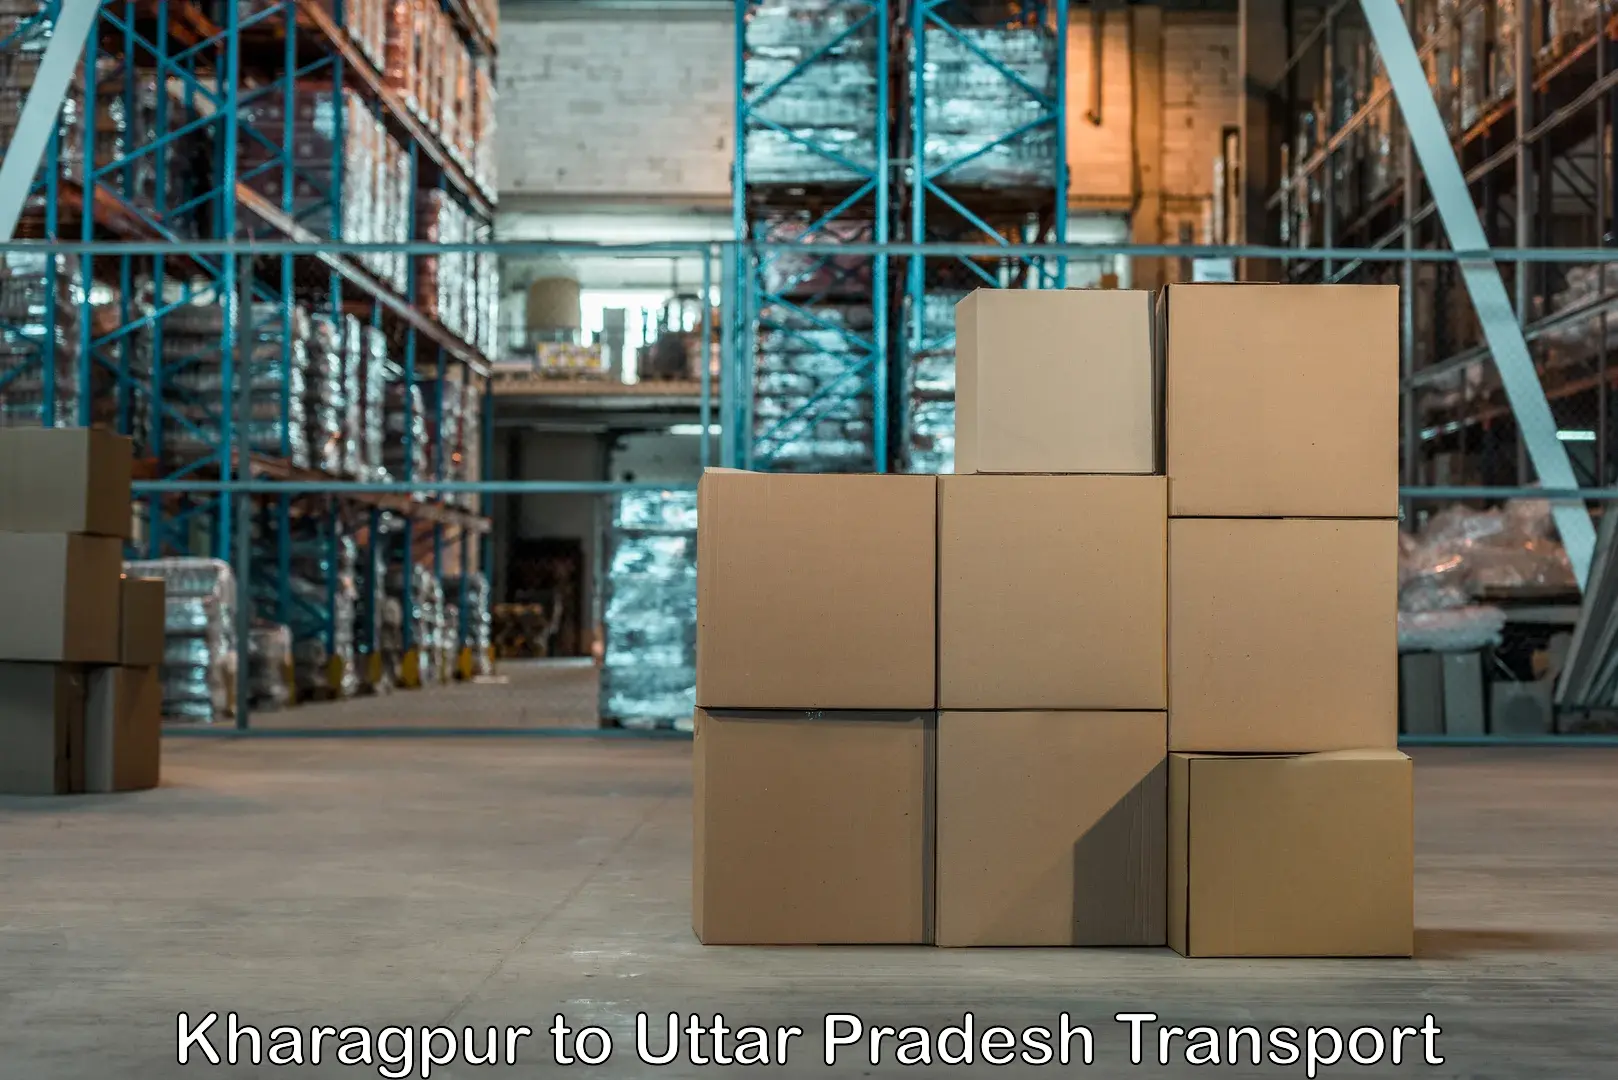 Daily parcel service transport Kharagpur to Uttar Pradesh